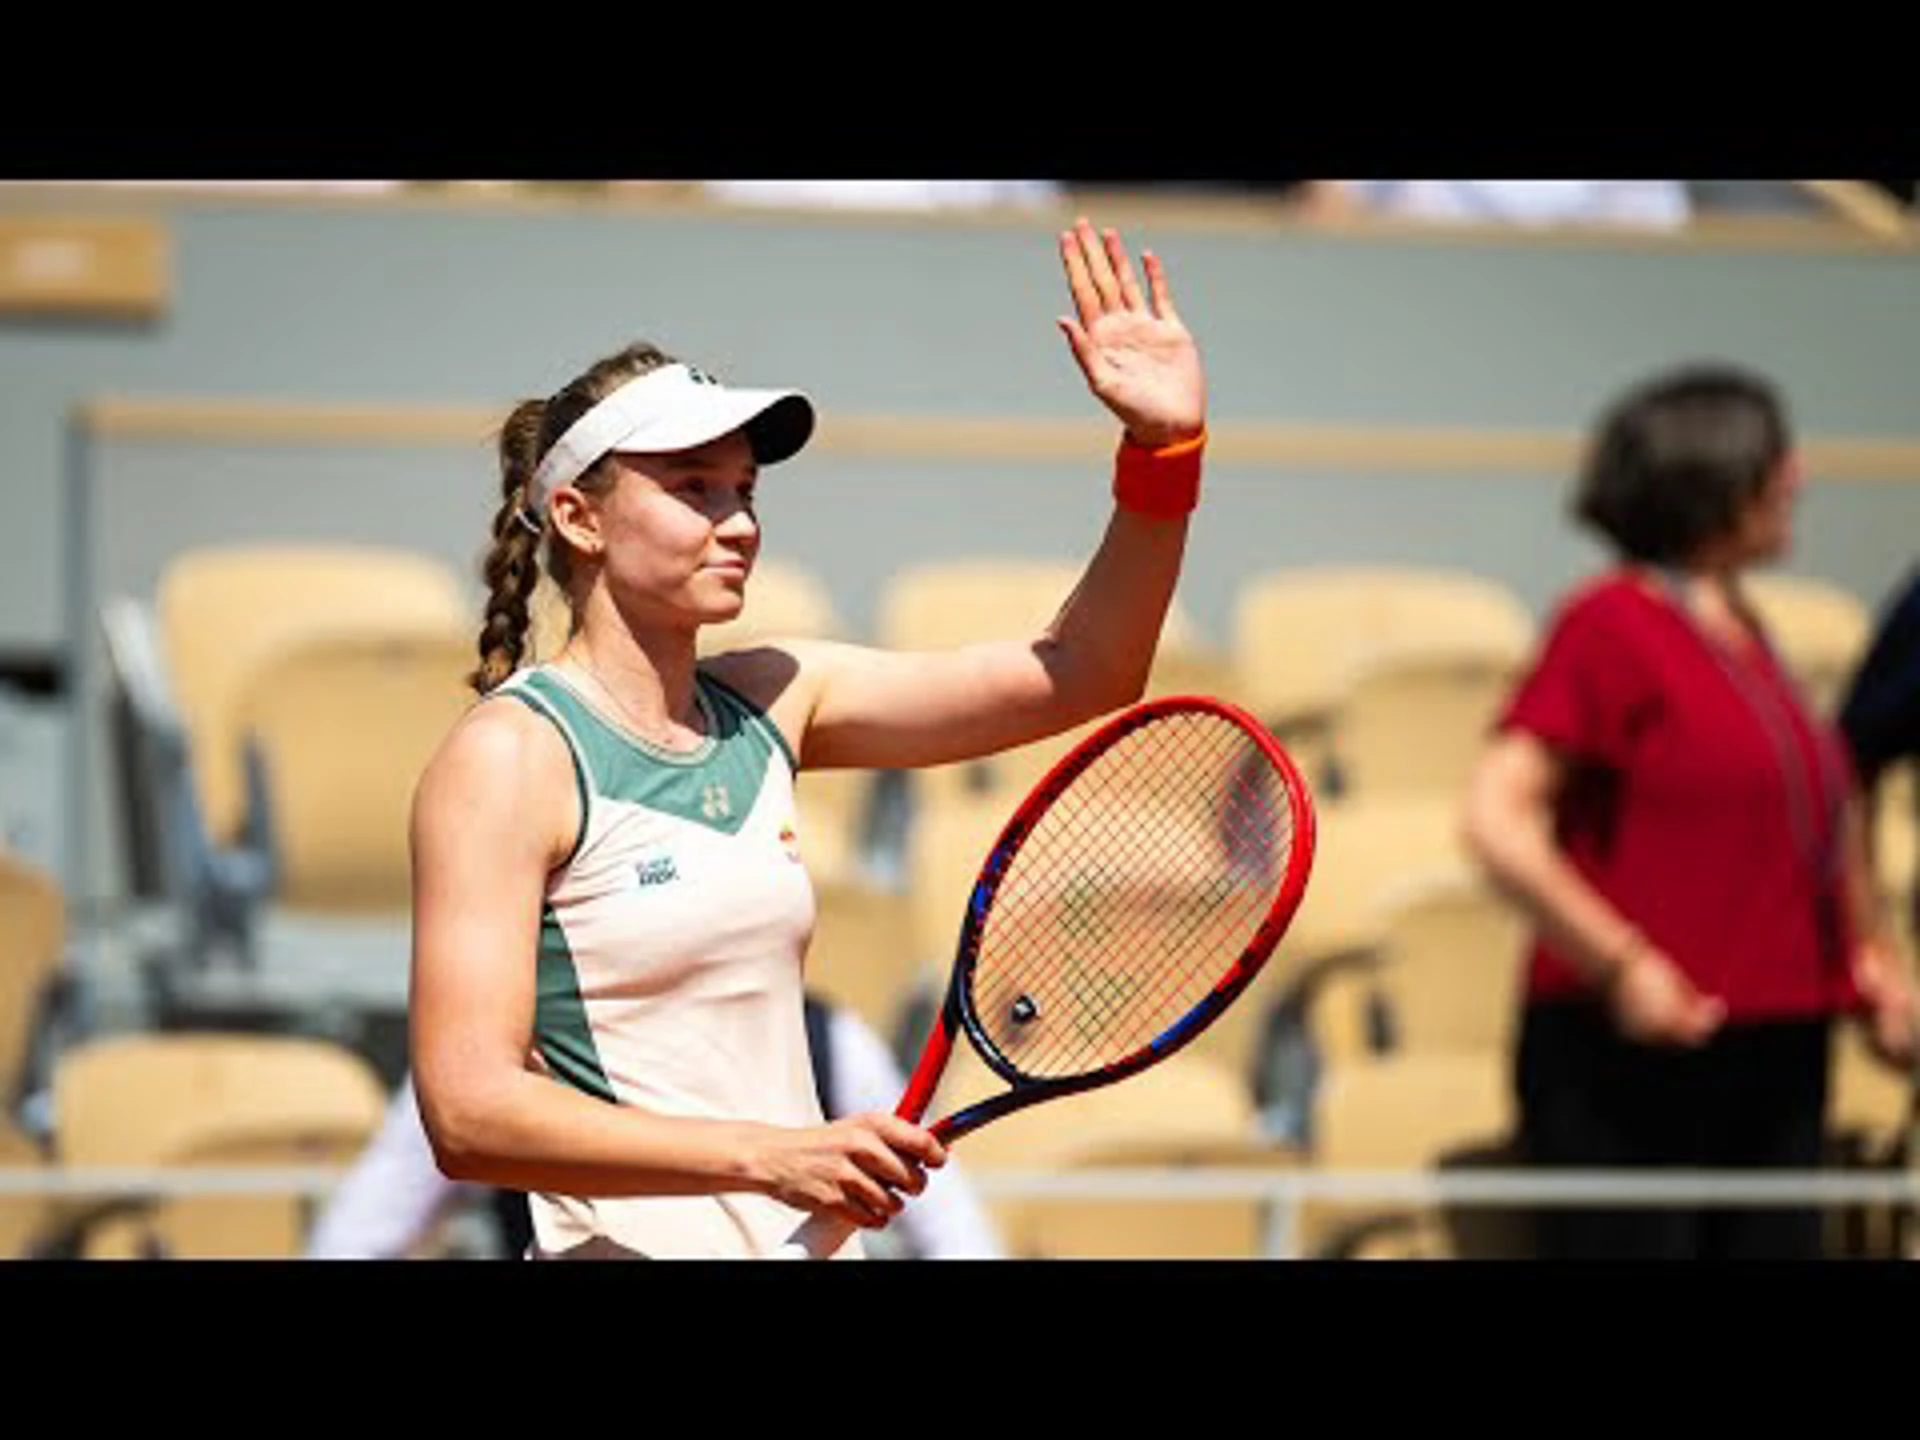 Elena Rybakina v Elina Svitolina | Women's Singles | Day 9 | Highlights | Roland Garros